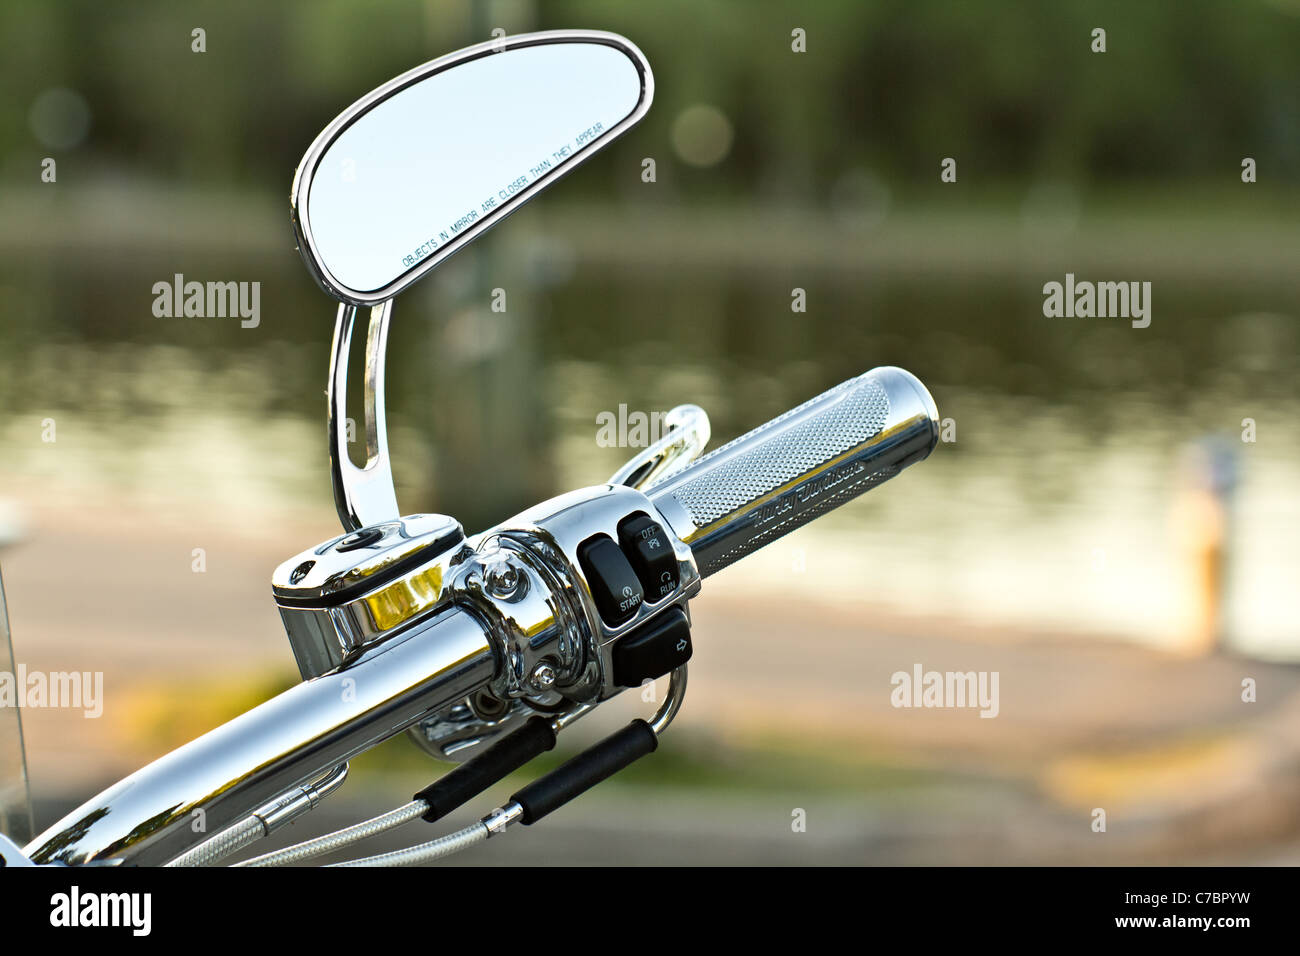 Le côté miroir et d'un guidon moto brillant Photo Stock - Alamy